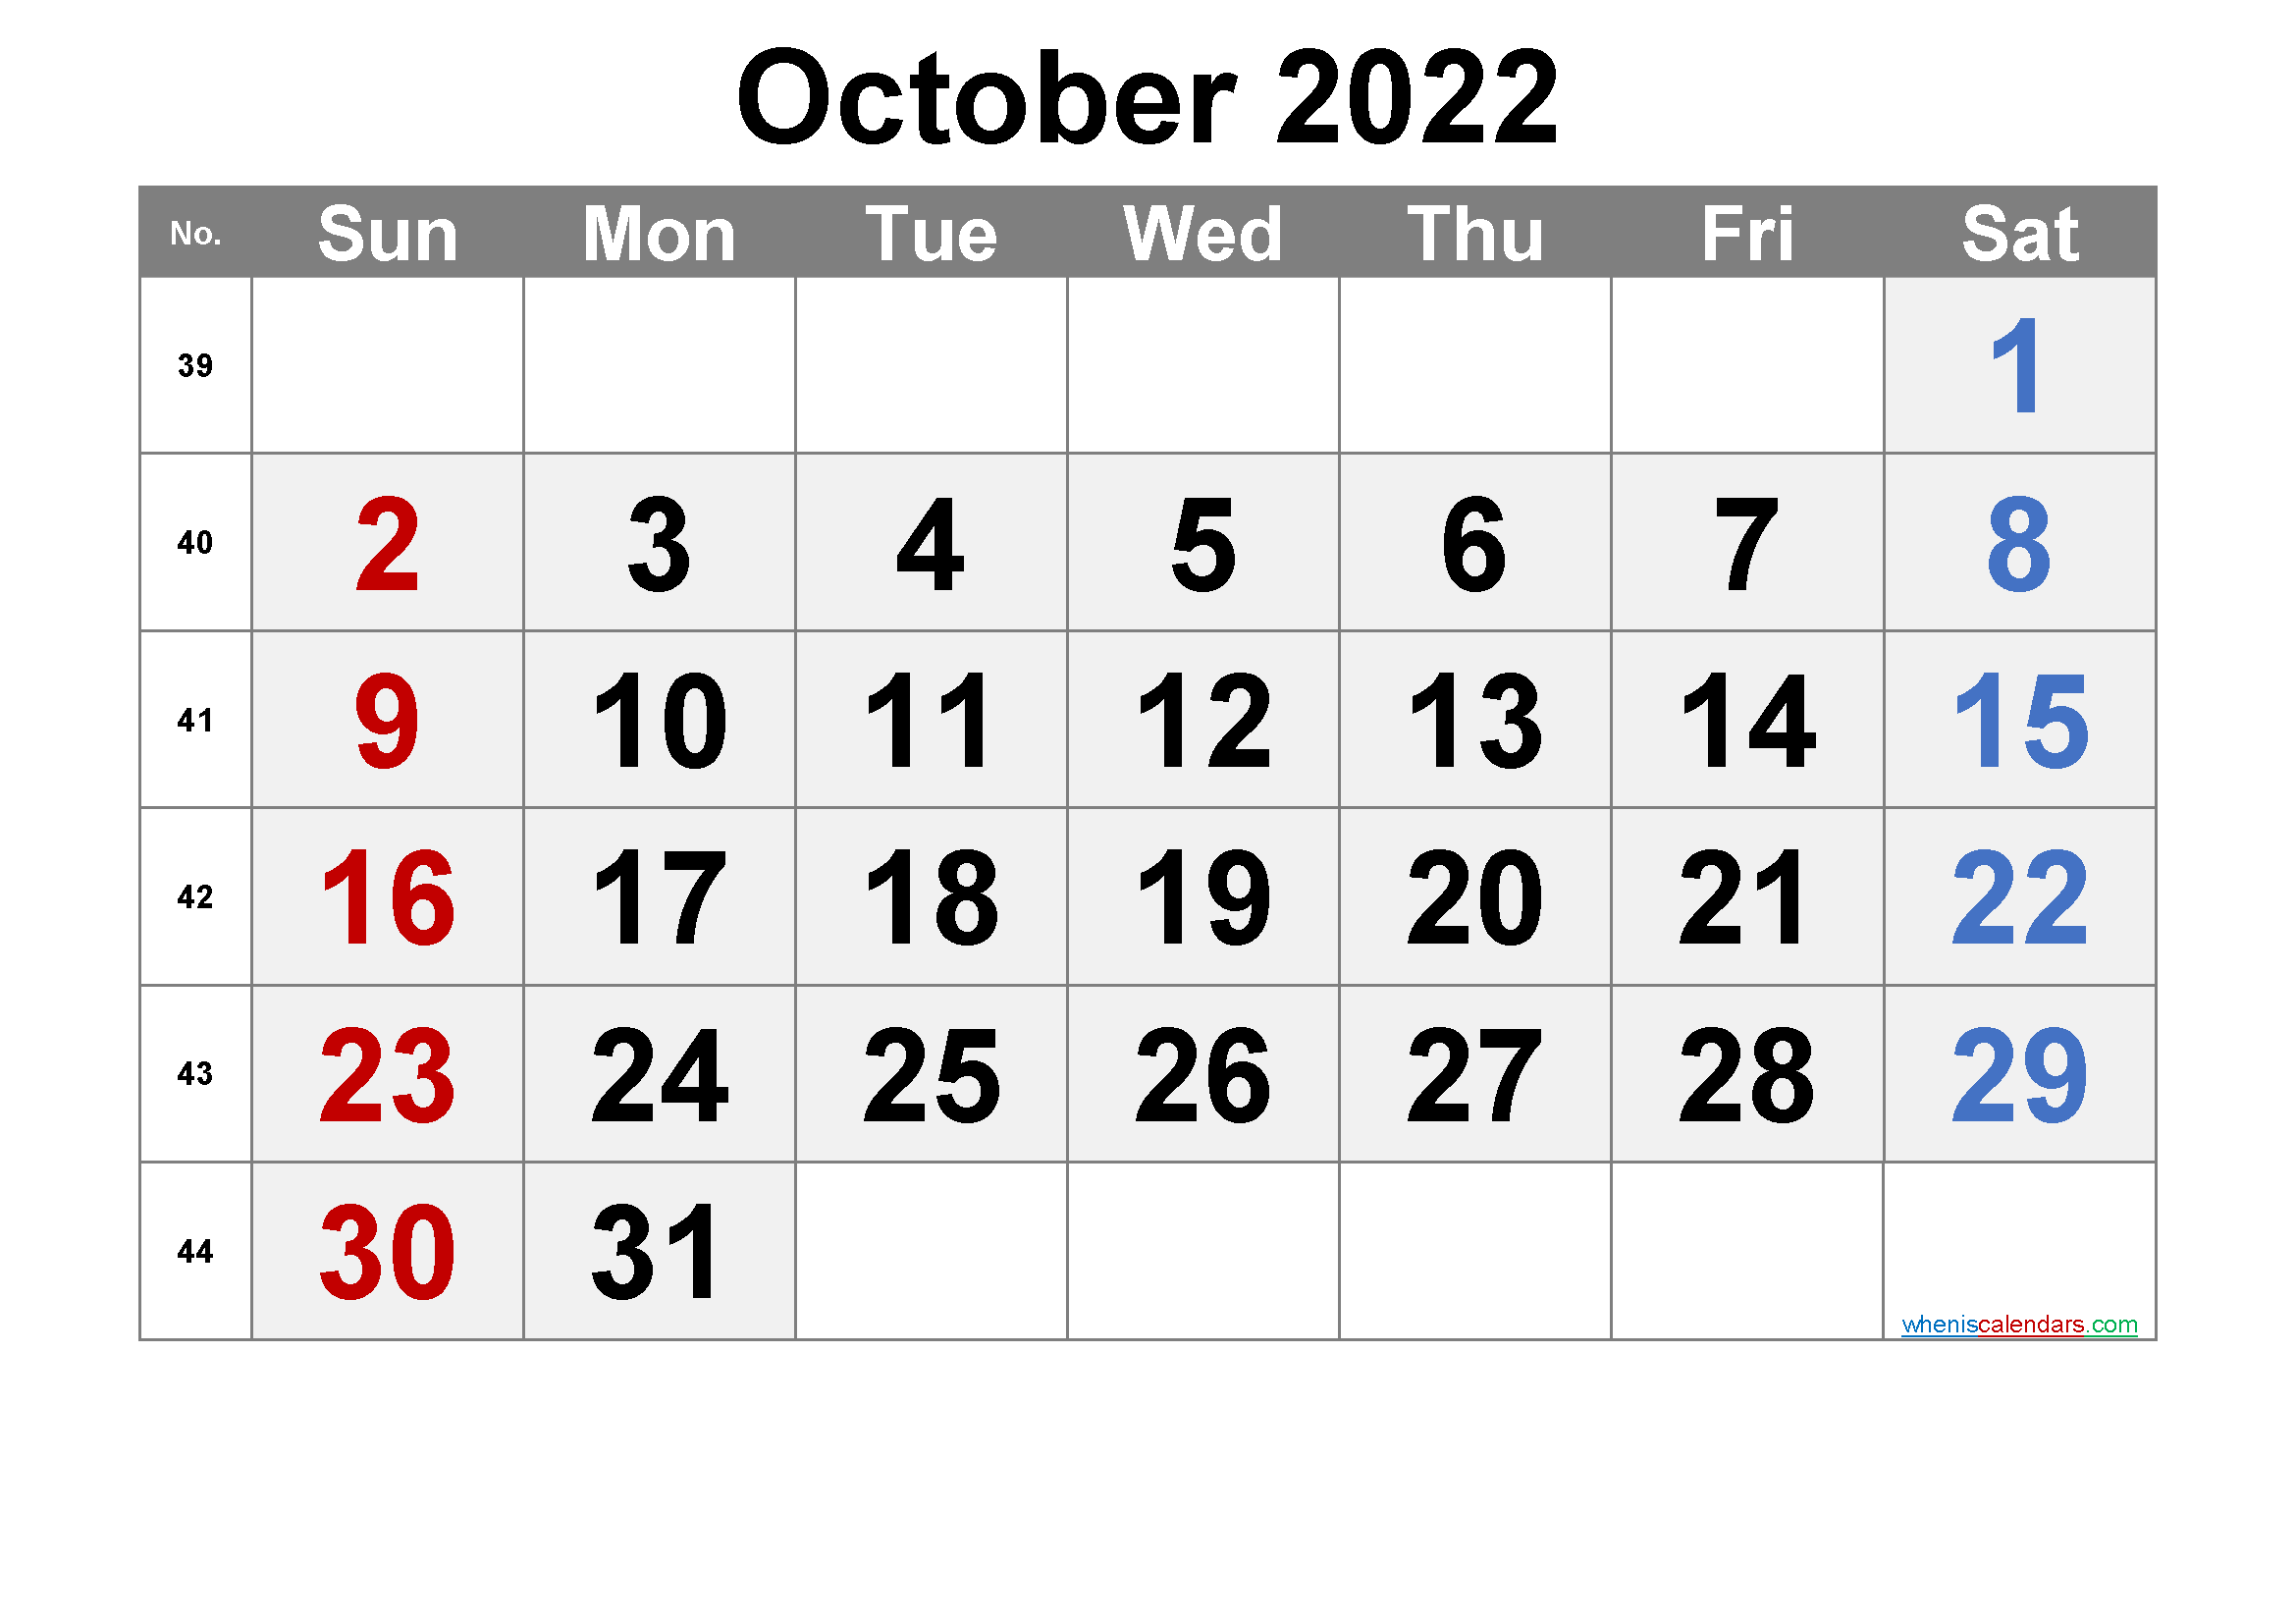 Free Printable Calendar 2022 October Free Printable Calendar October 2022 With Week Numbers